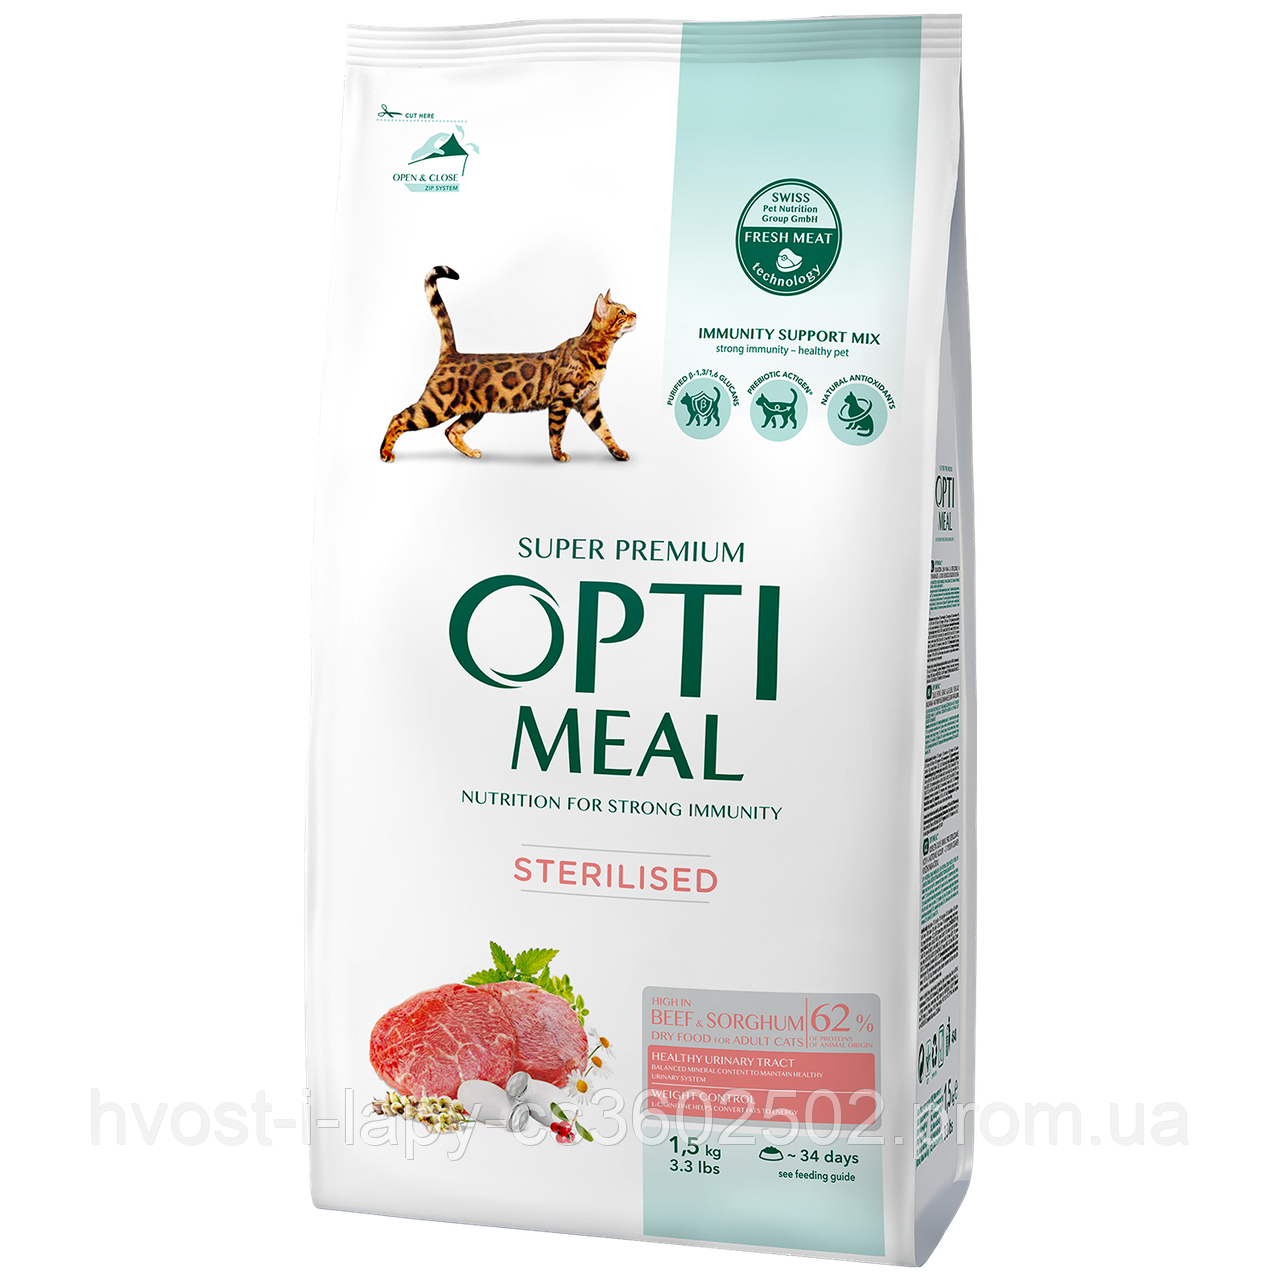 

Сухой корм OPTIMEAL для стерилизованных кошек и кастрированных котов – говядина и сорго 1.5 кг